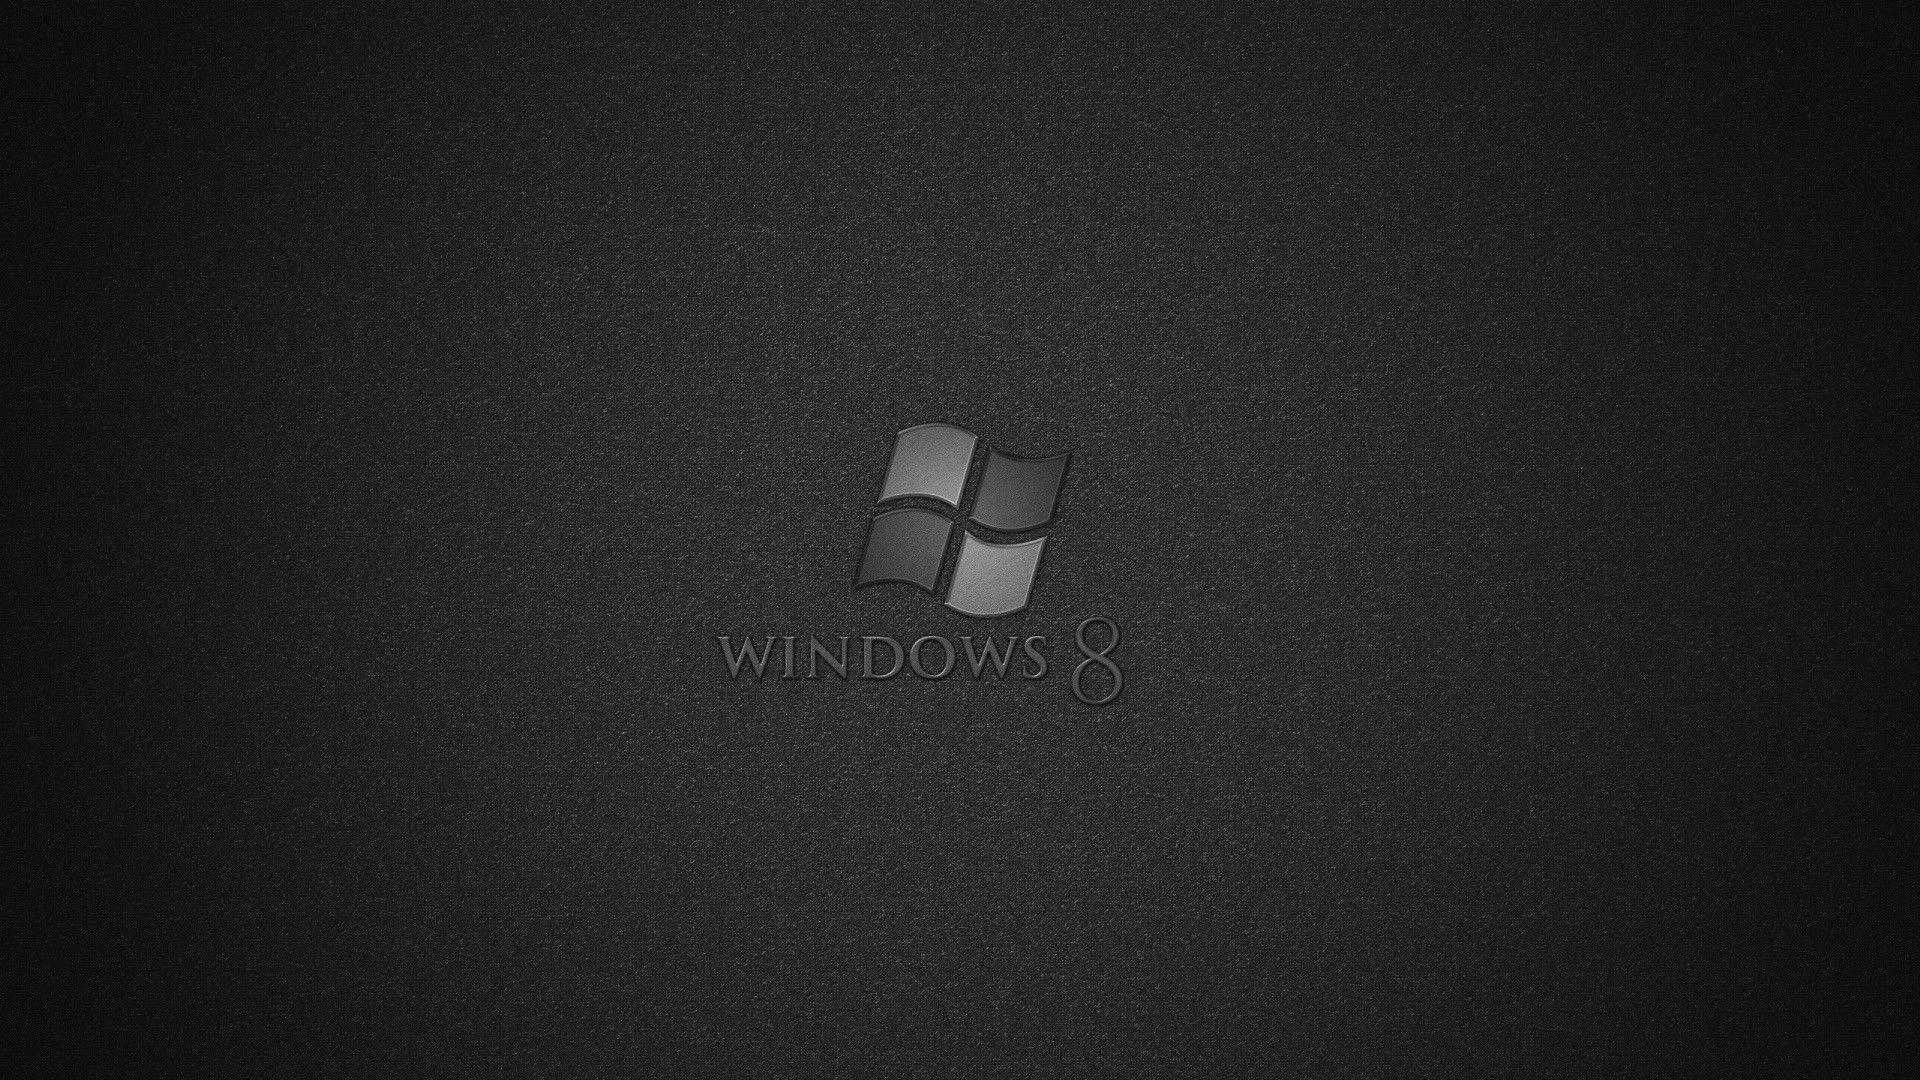 Hãy khám phá bộ sưu tập hình nền Windows 8 đen thật đẹp mắt để làm mới màn hình máy tính của bạn. Chúng tôi chắc chắn rằng bạn sẽ tìm thấy bức ảnh đẹp nhất để làm nền cho máy tính của mình. Đừng bỏ lỡ cơ hội này để trang trí cho màn hình của bạn thật độc đáo và đẳng cấp!